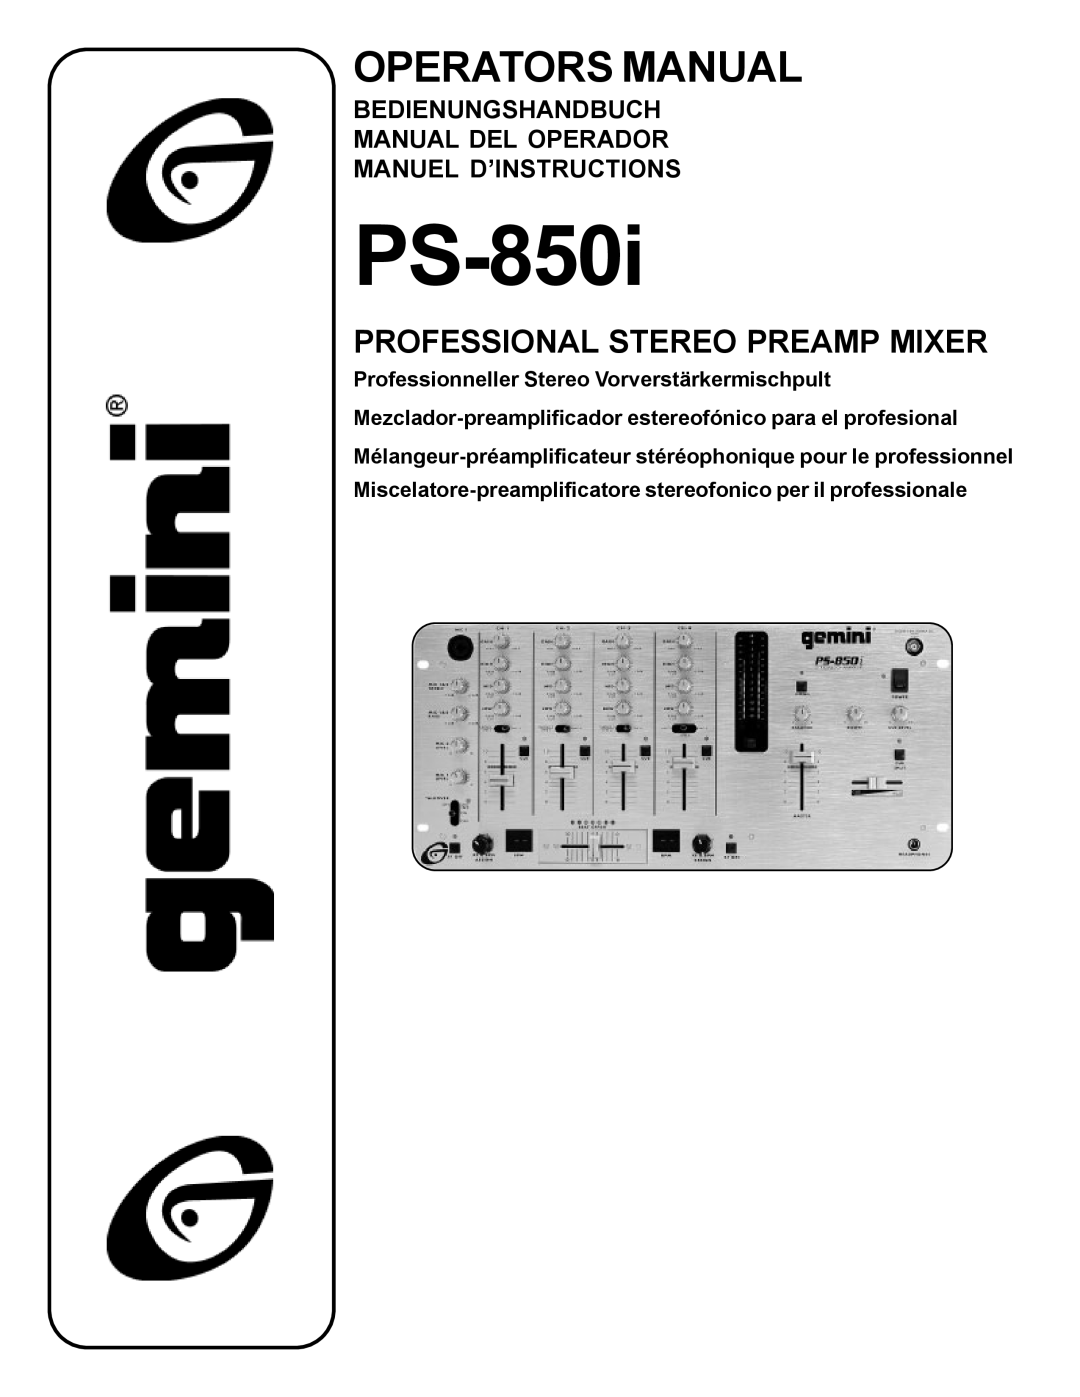 Gemini PS-850i manual Bedienungshandbuch Manual Del Operador Manuel D’Instructions, Operators Manual 